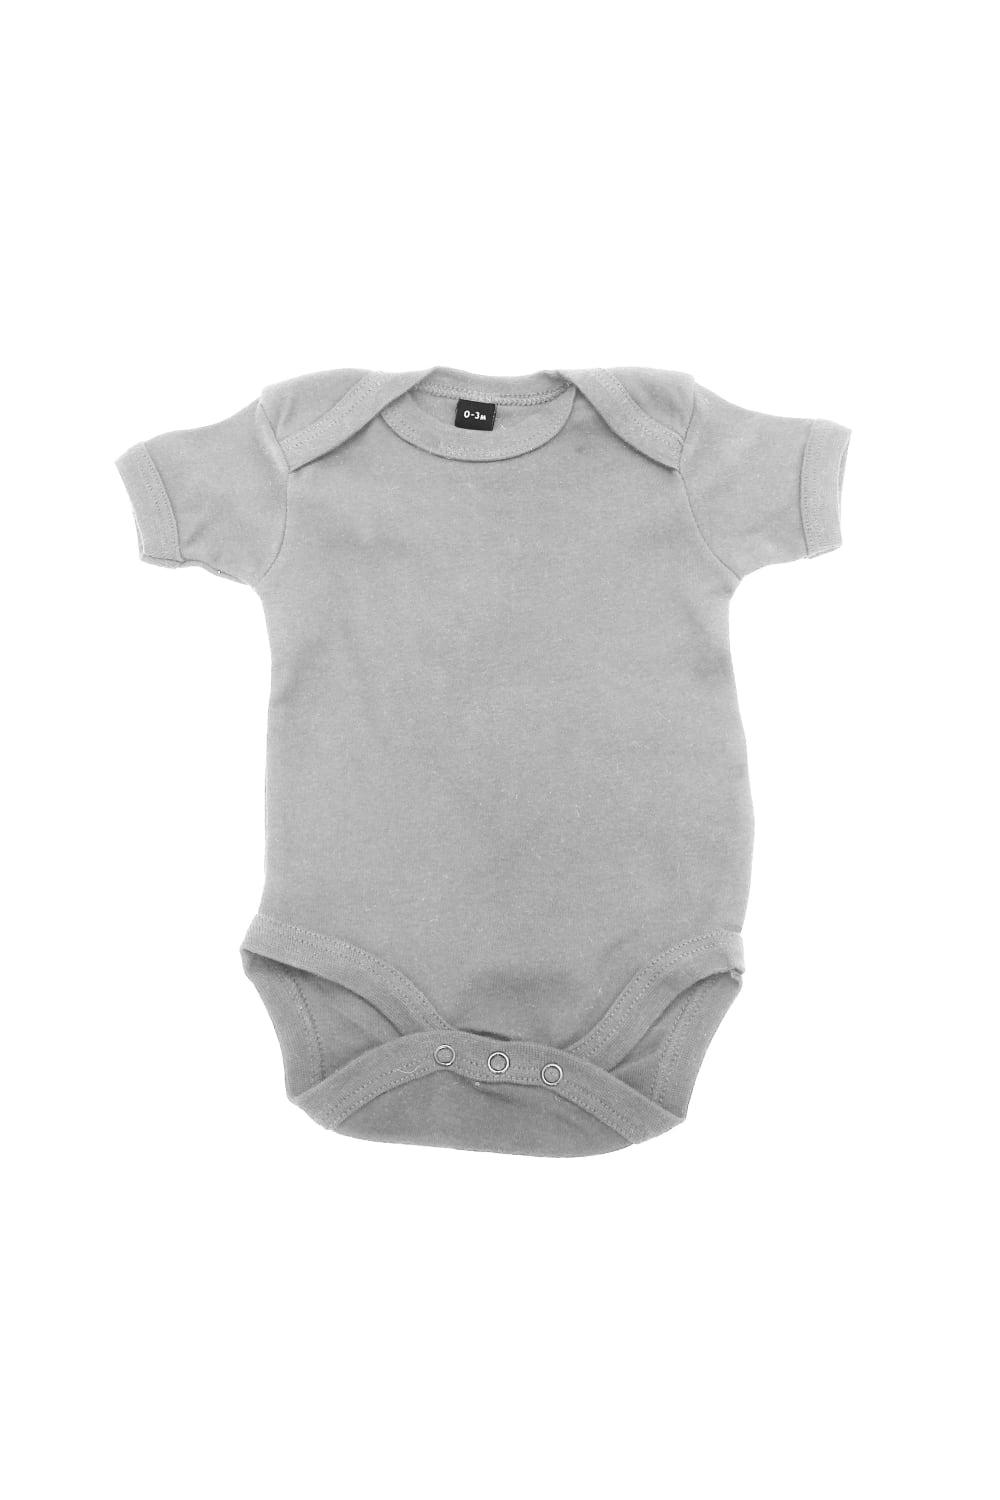 Babybugz Baby Onesie / Baby And Toddlerwear (Heather Gray Melange)